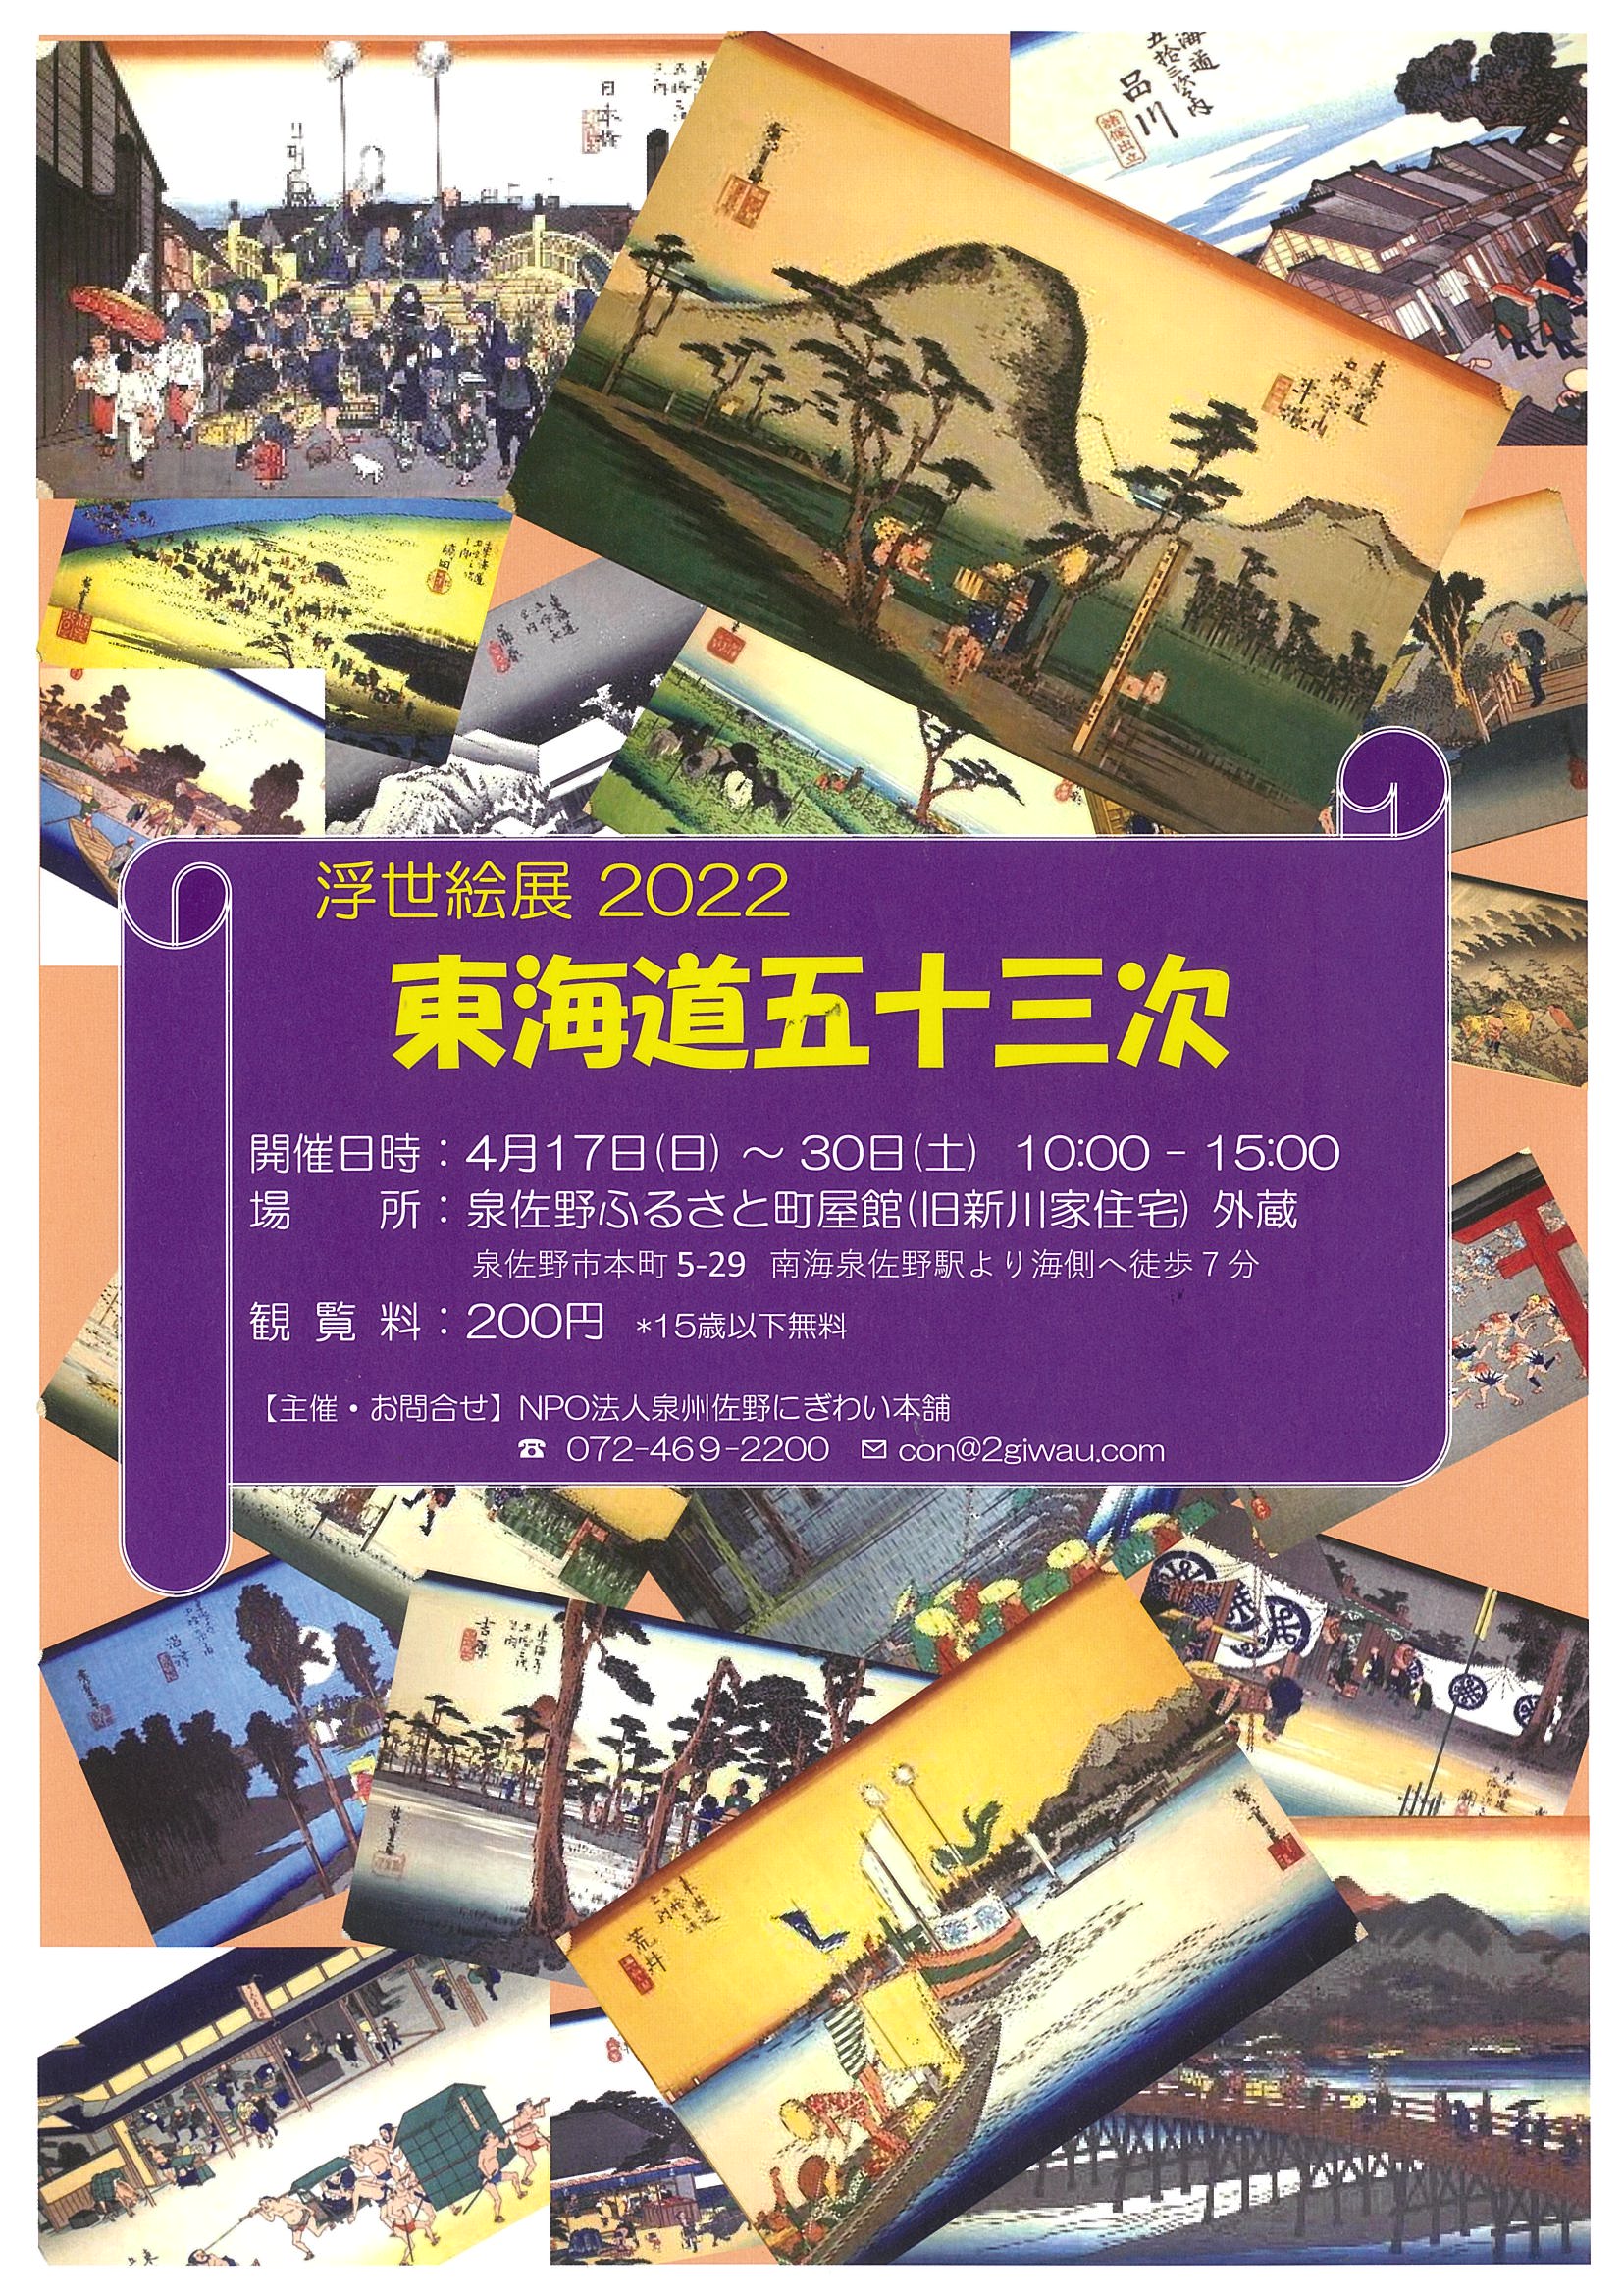 浮世絵展2022「東海道五十三次」